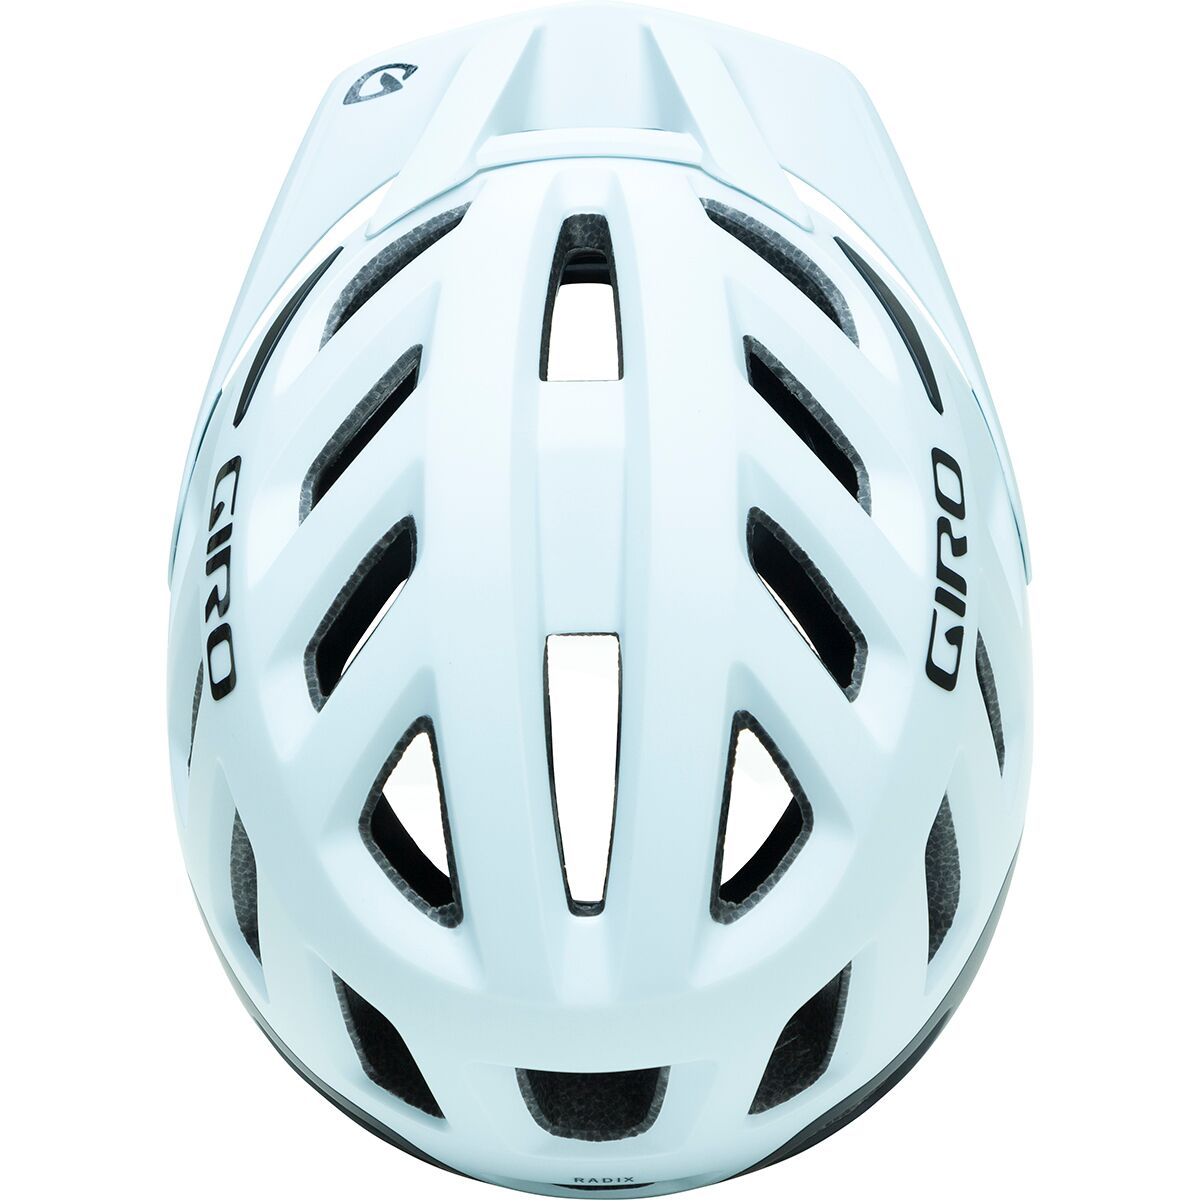 Giro Radix MIPS Helmet - Men